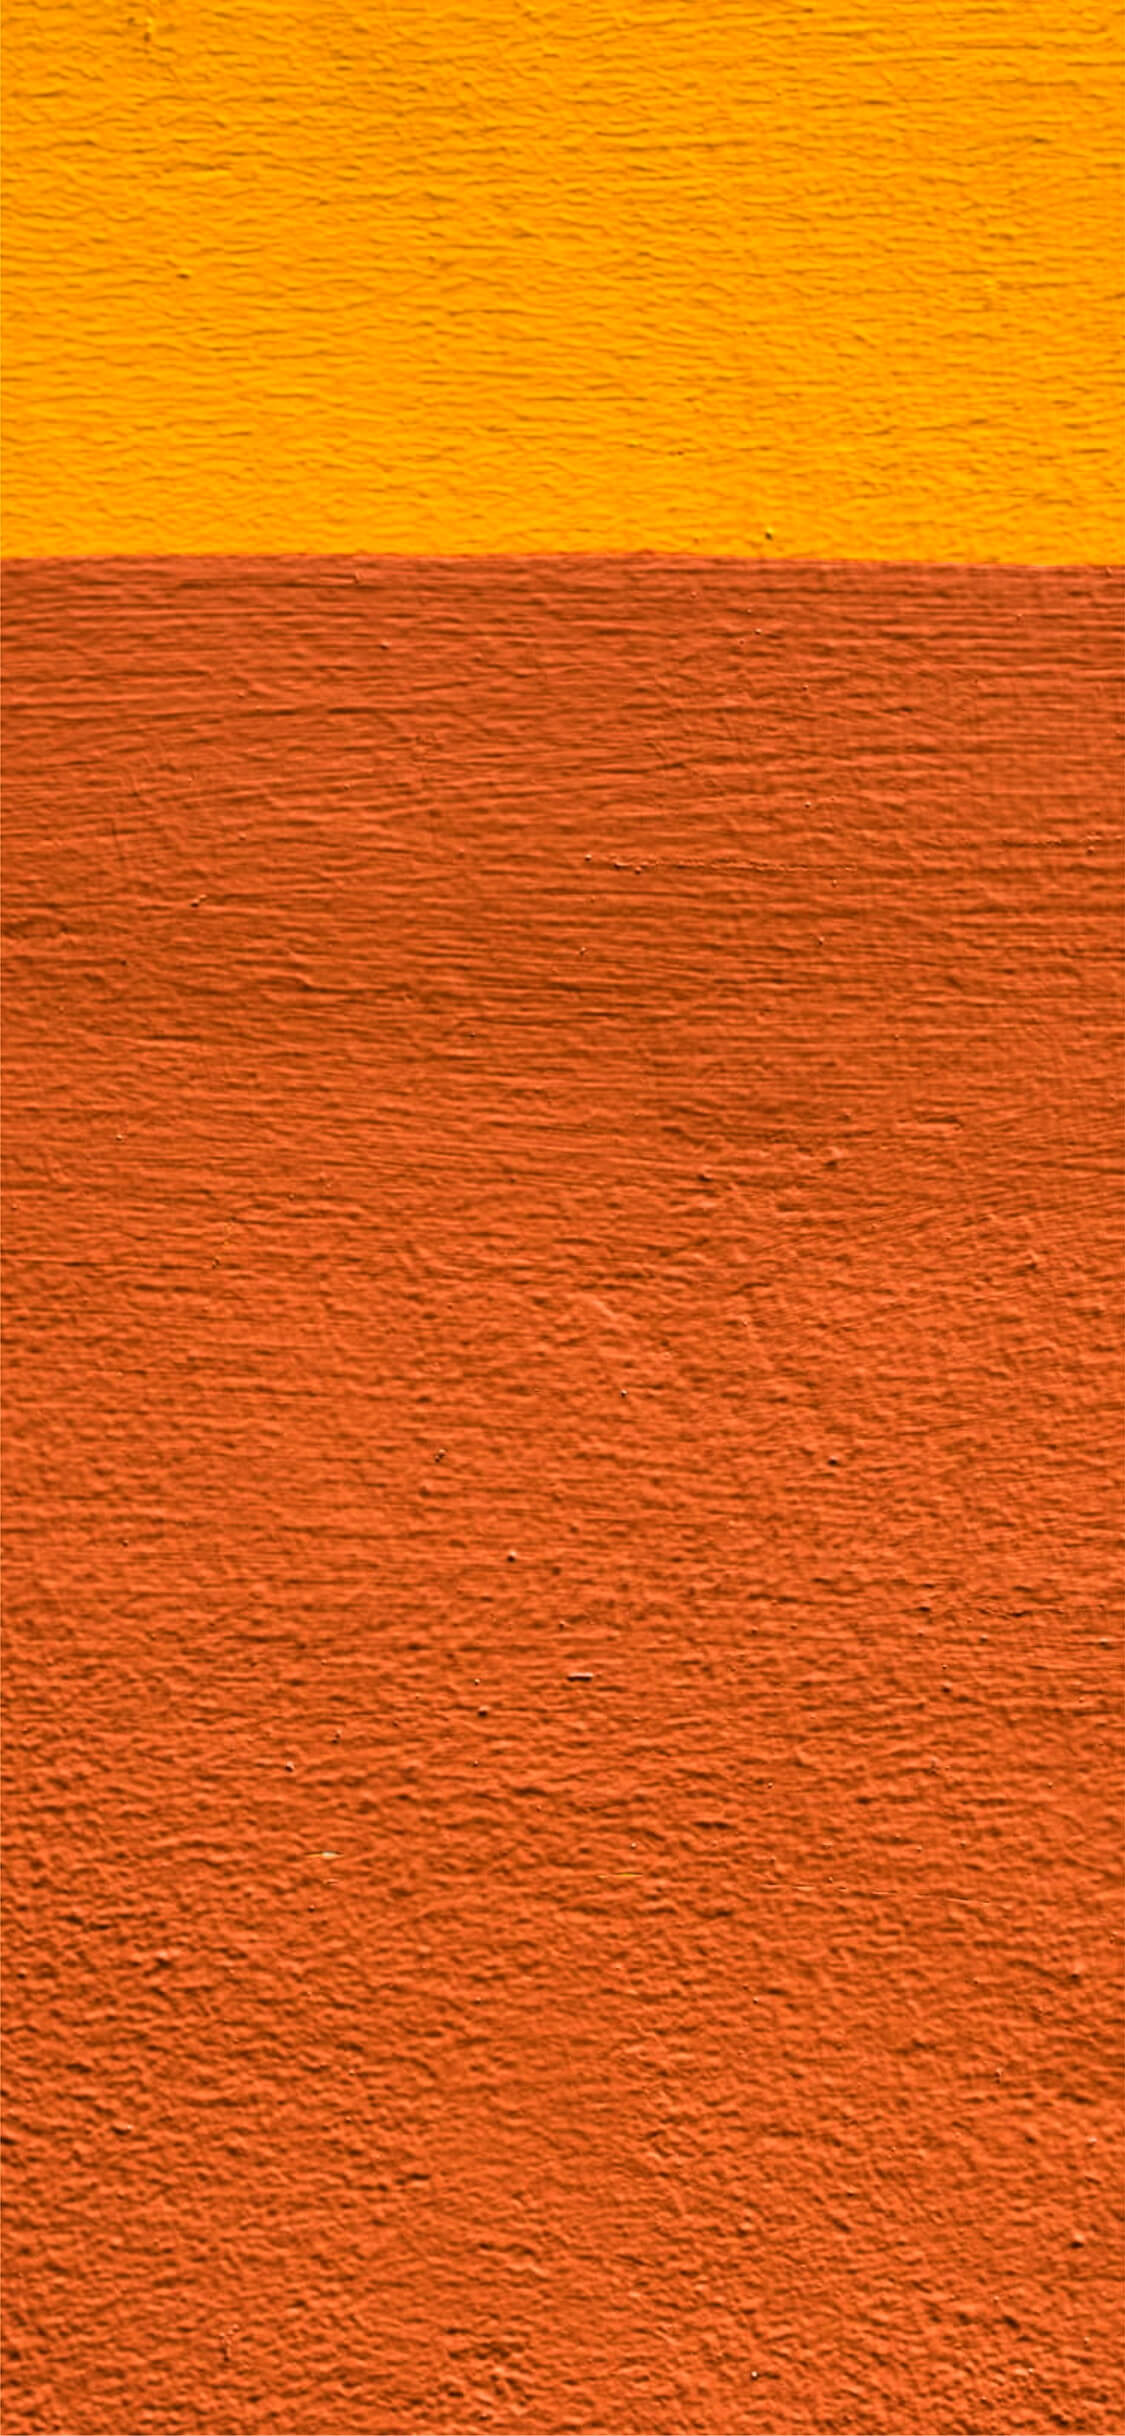 Iphone11pro Iphonexs Xのオレンジのおしゃれな無料壁紙 ページ3